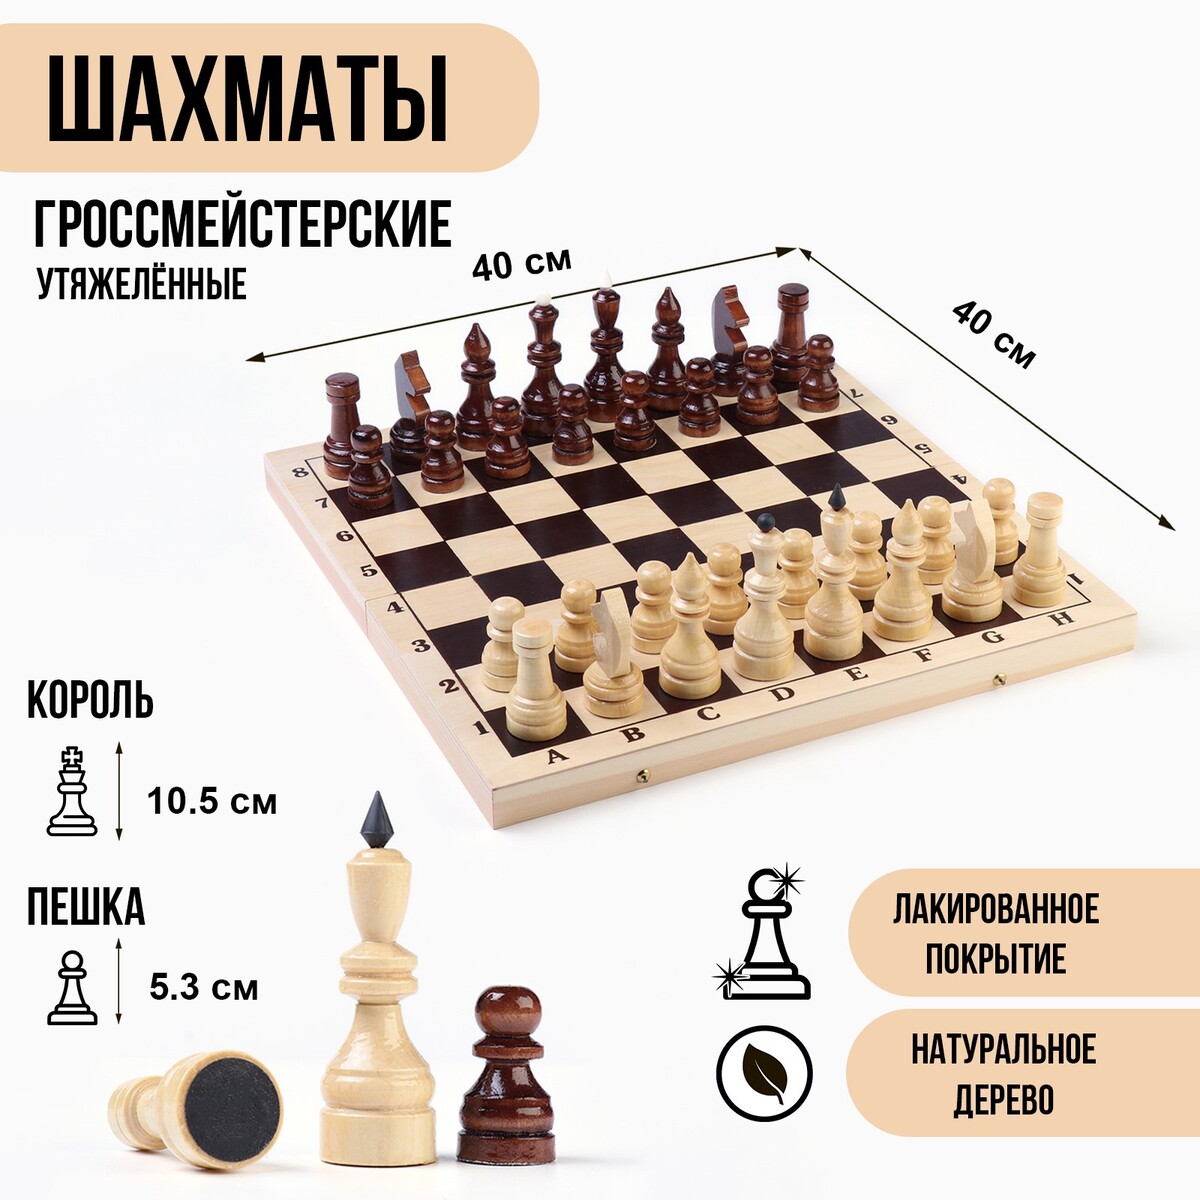 Шахматы гроссмейстерские, турнирные, утяжеленные, 40х40 см, король h=10.5 см, пешка 5.3 см король крыс